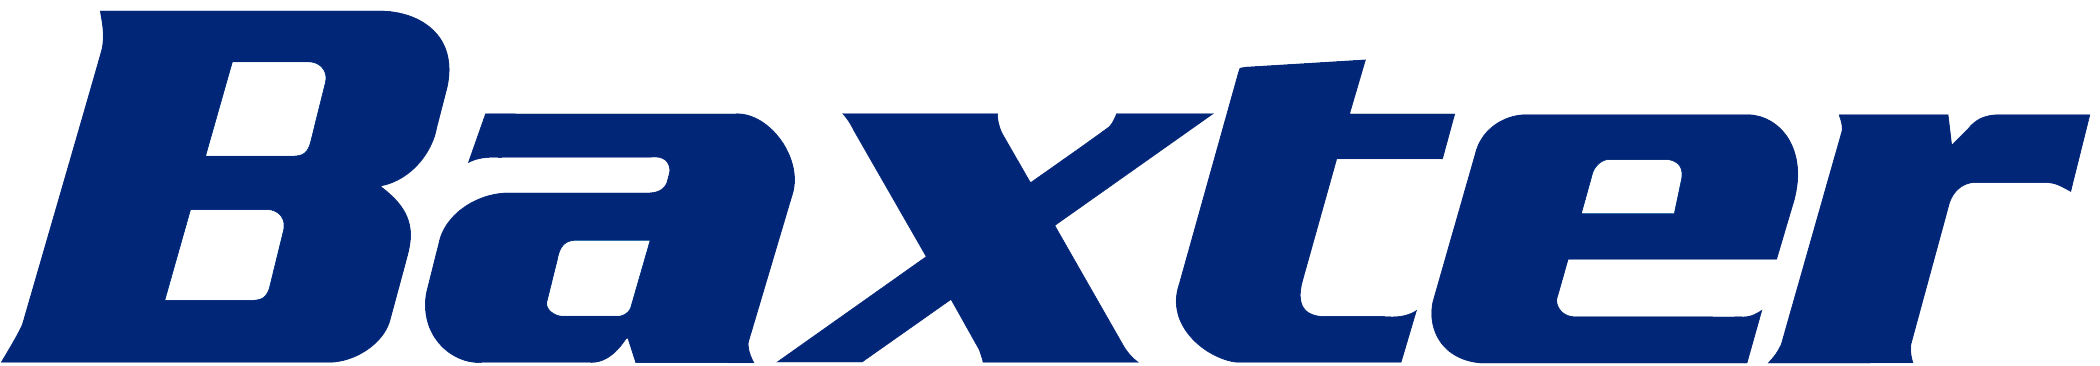 Baxter Logo - Baxter Logo | PRISYM ID